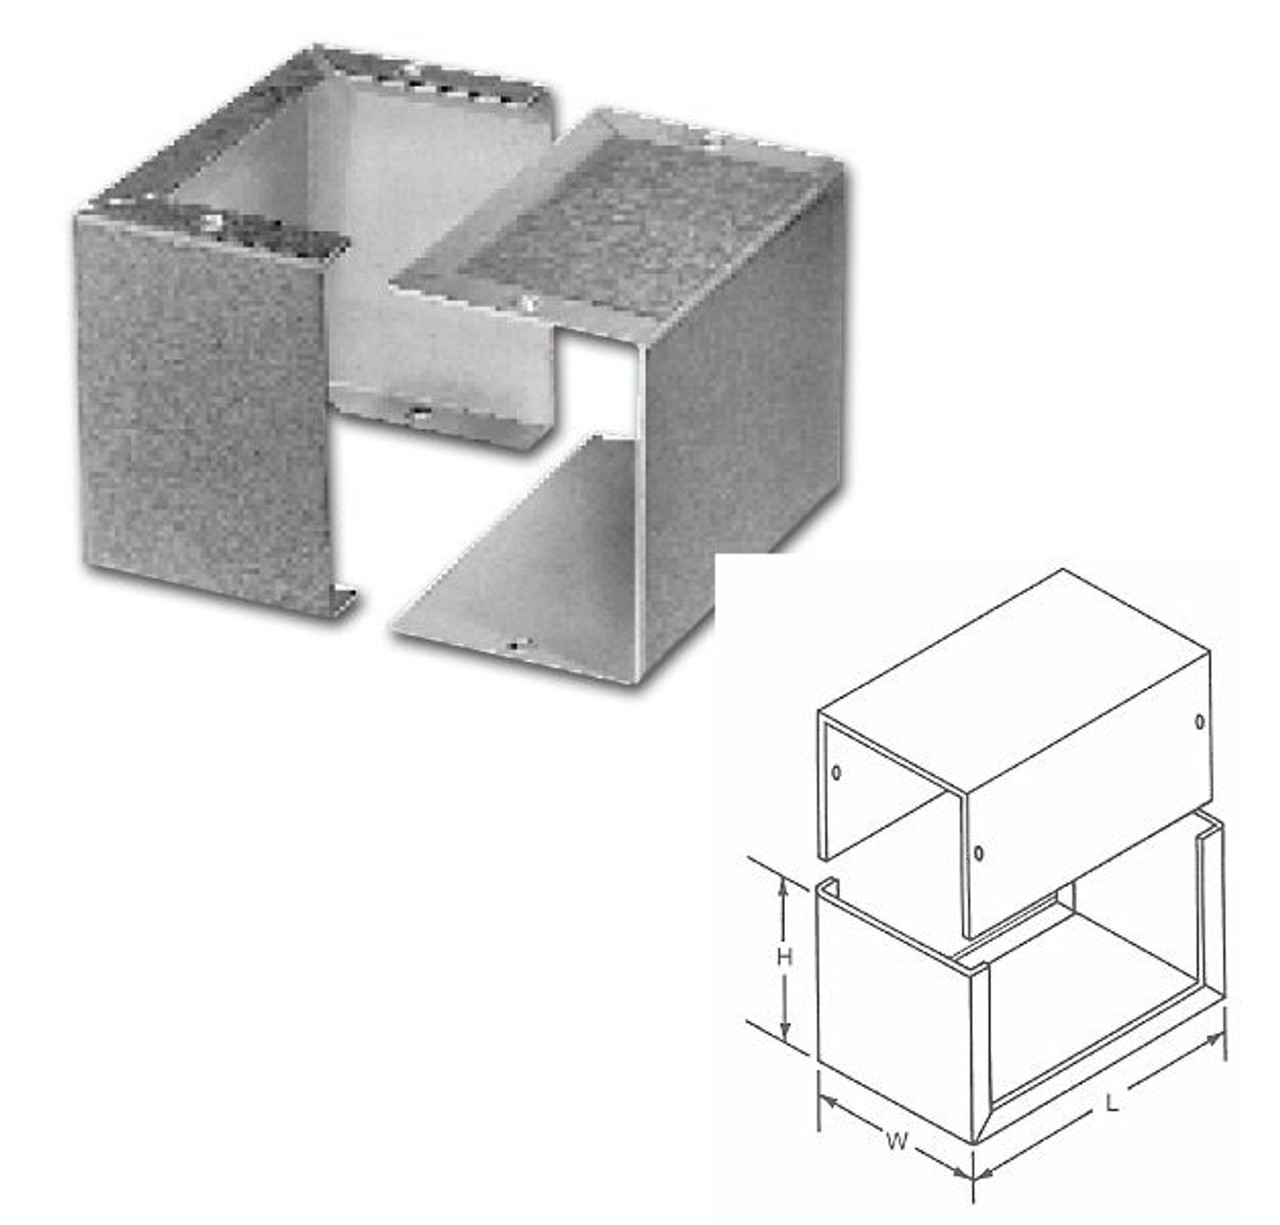 Bud Industries Inc. CU-2104-B Minibox Cabinet